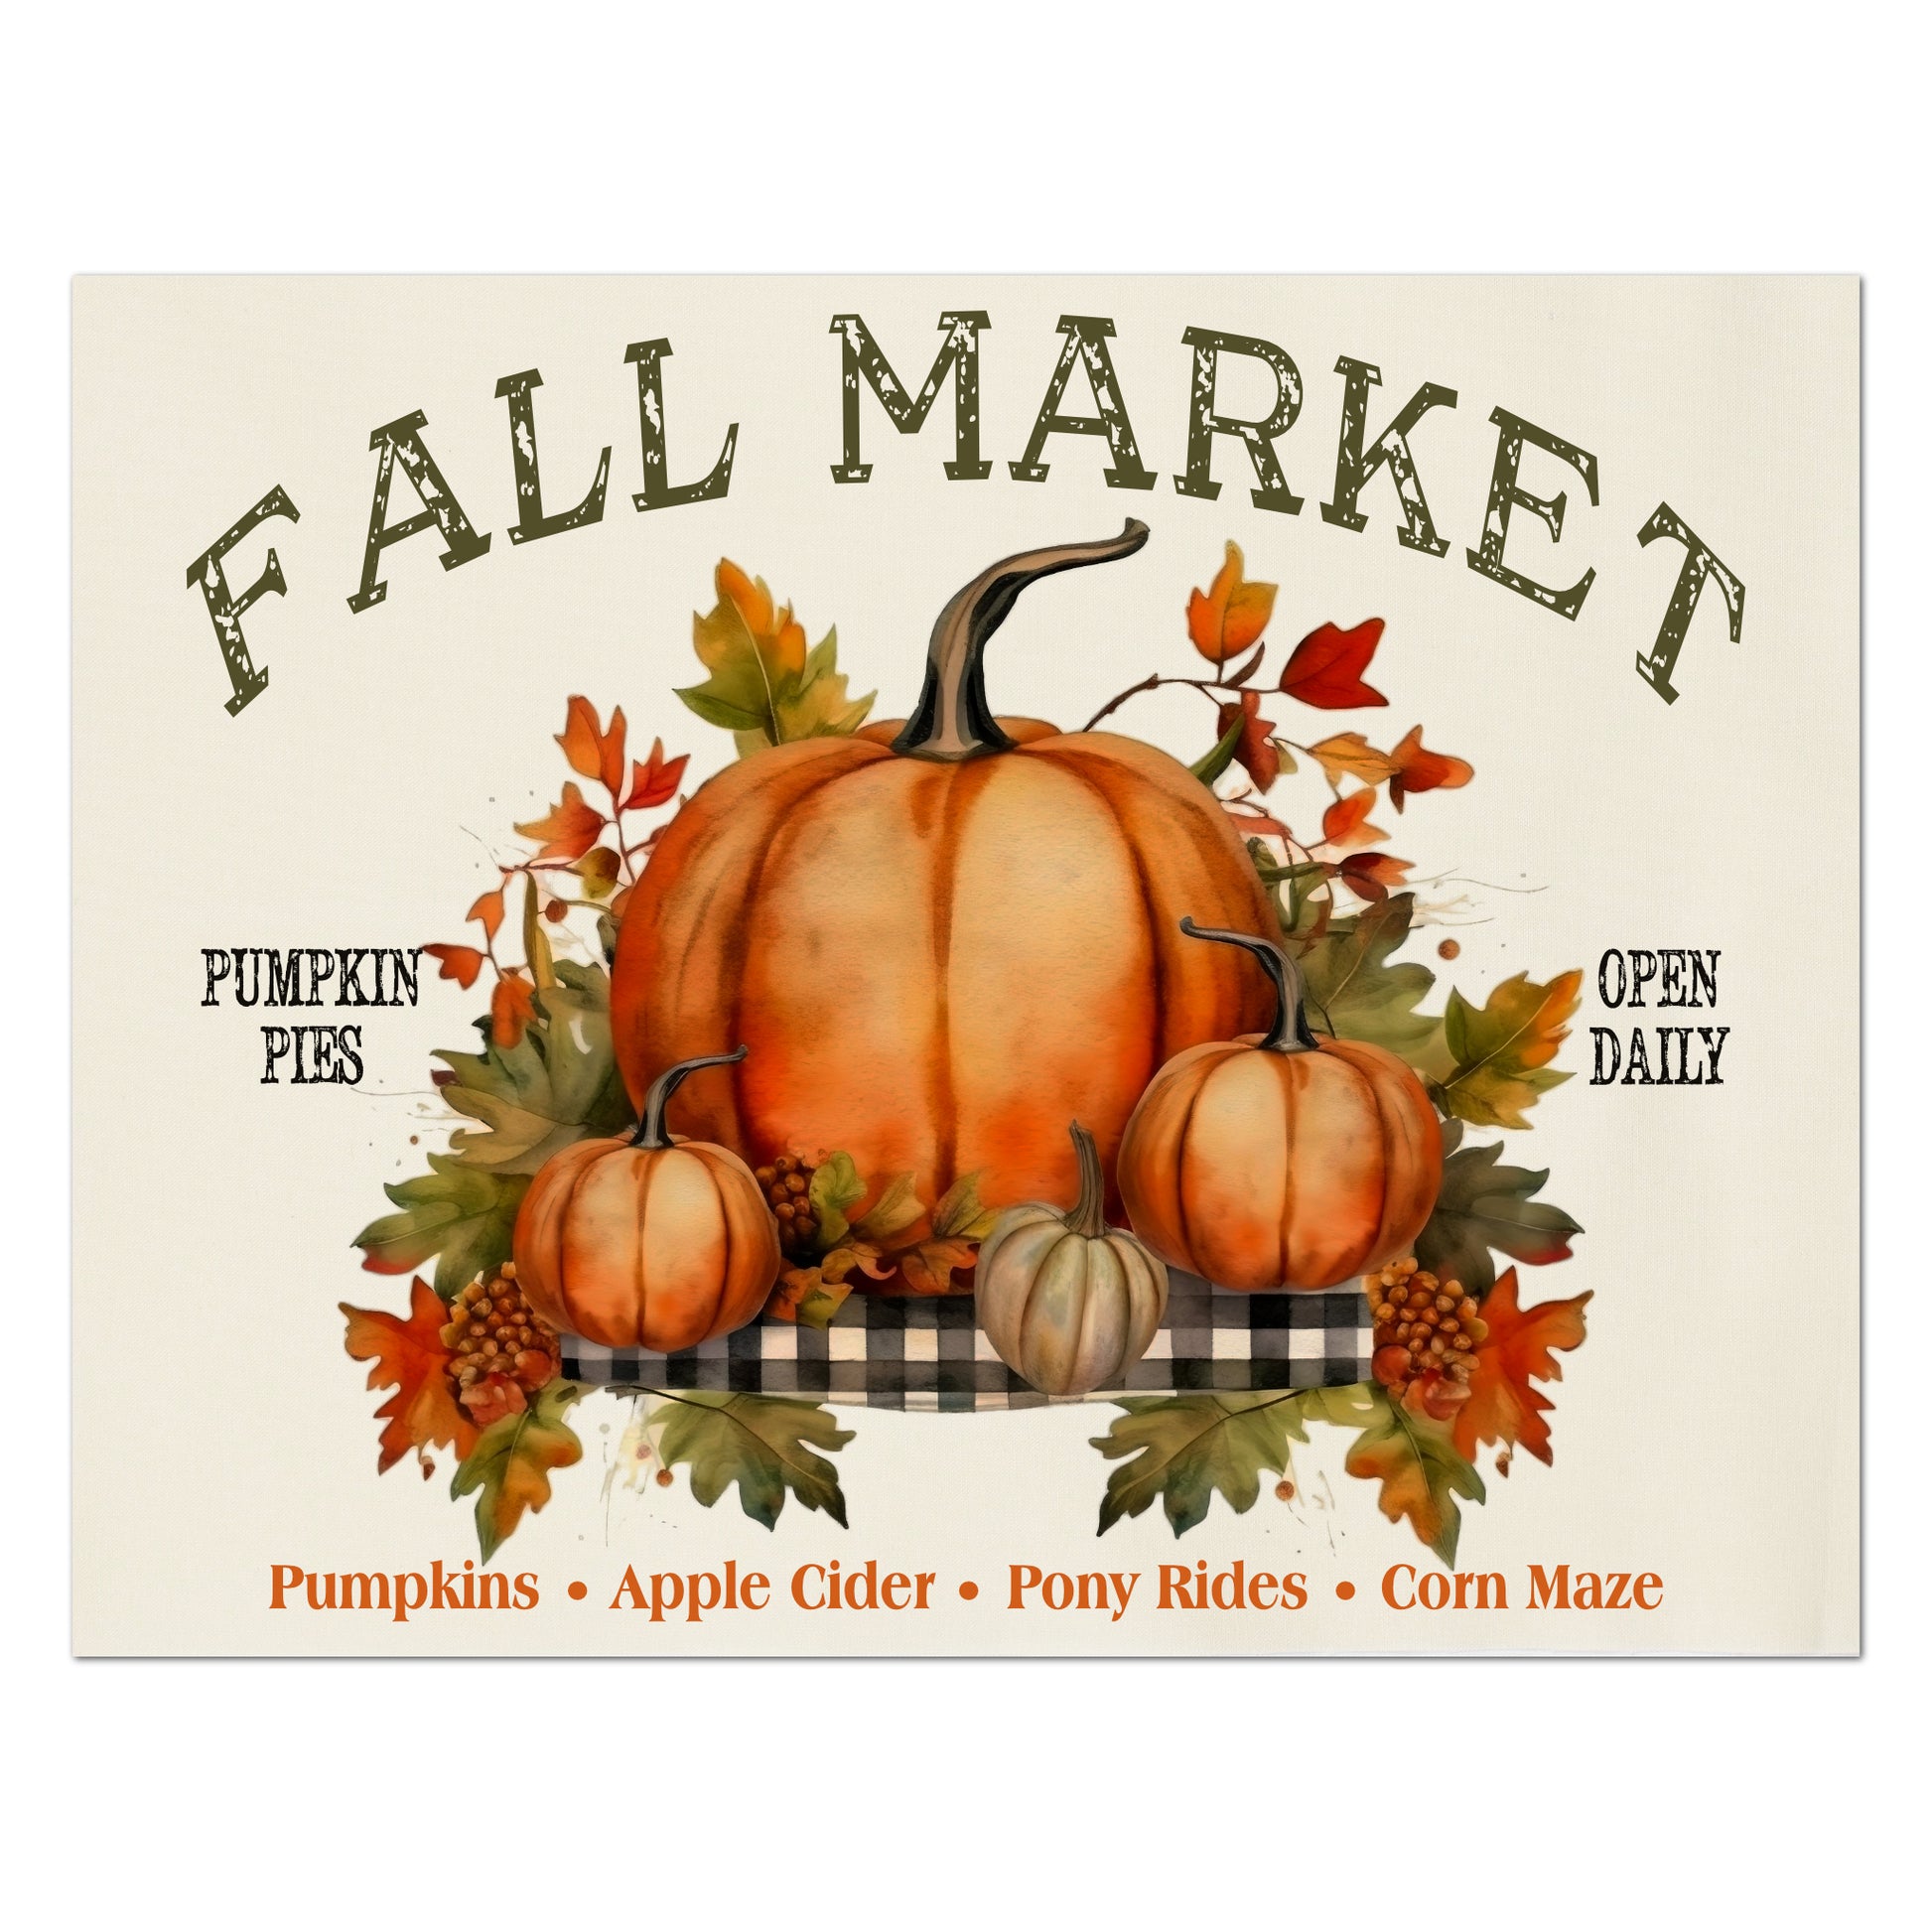 Pumpkin Fabric - Watercolor, Autumn Décor, Cotton, Muslin, Fall, Quilt Block, Panel